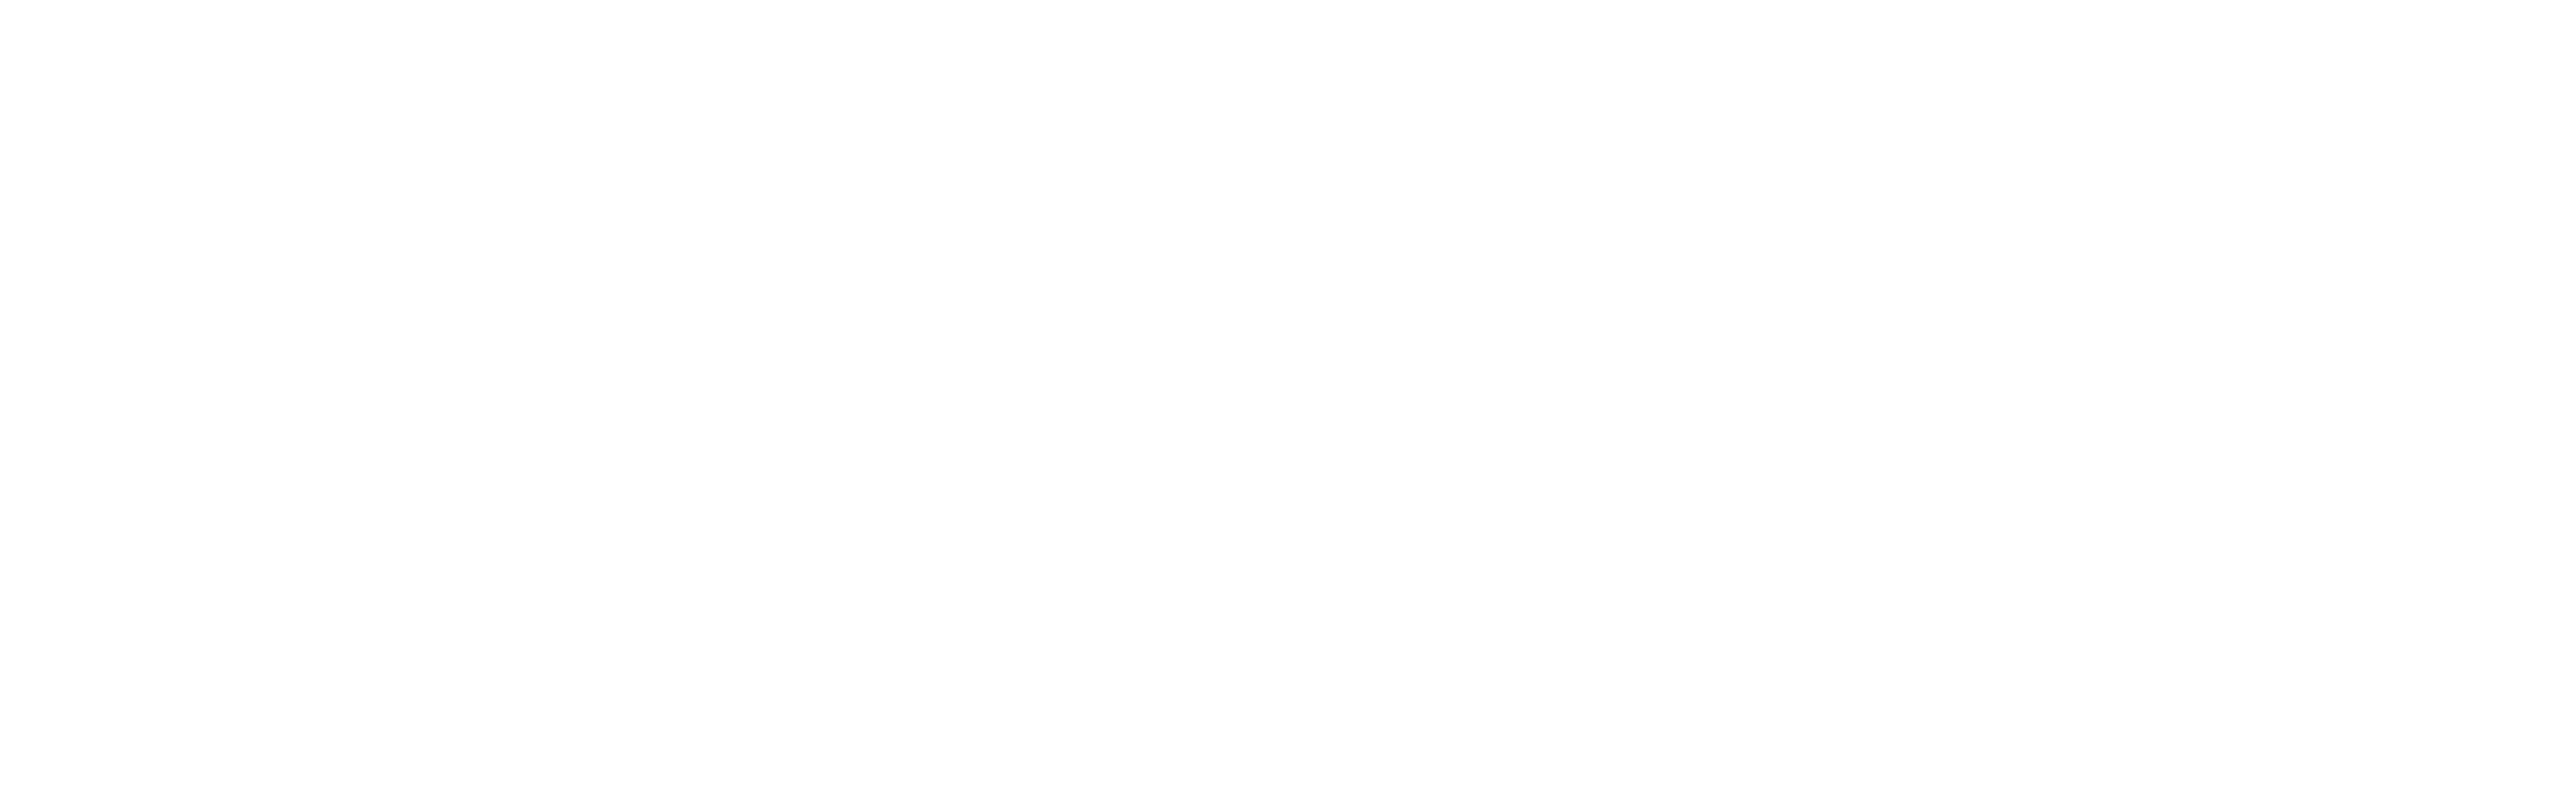 Logo signature site